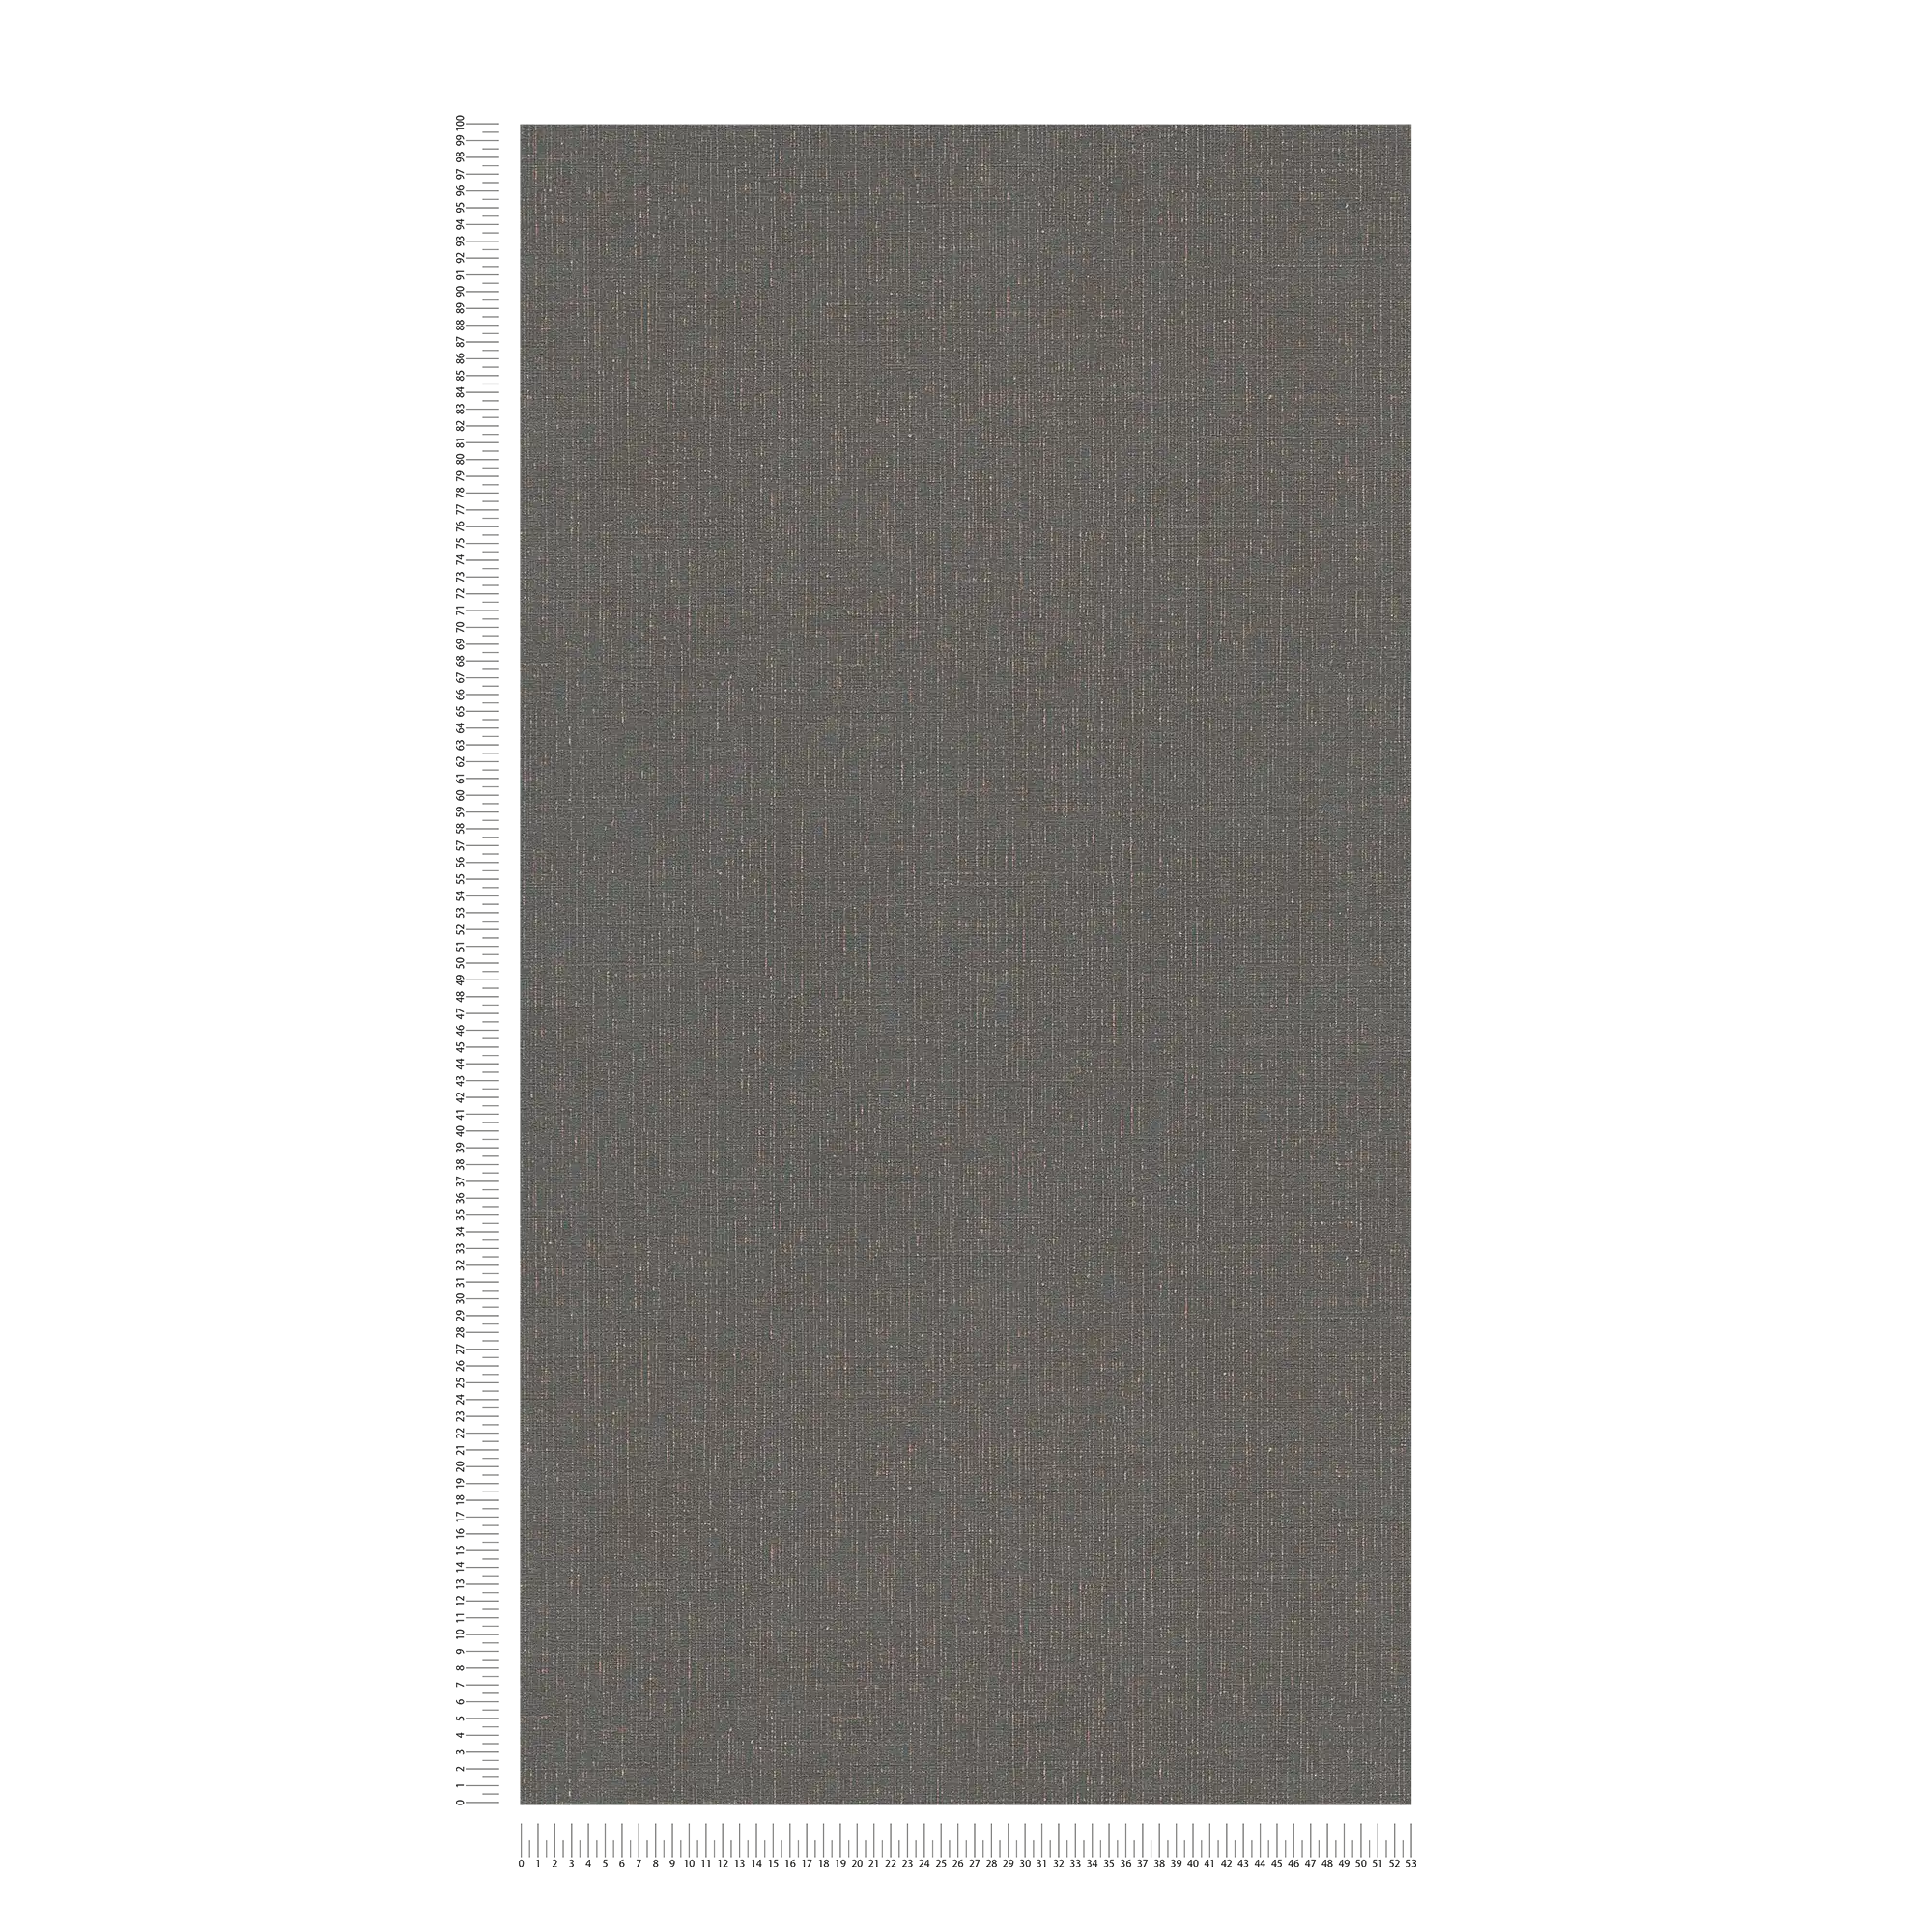             Carta da parati effetto tessuto antracite con struttura in lino - nero, grigio
        